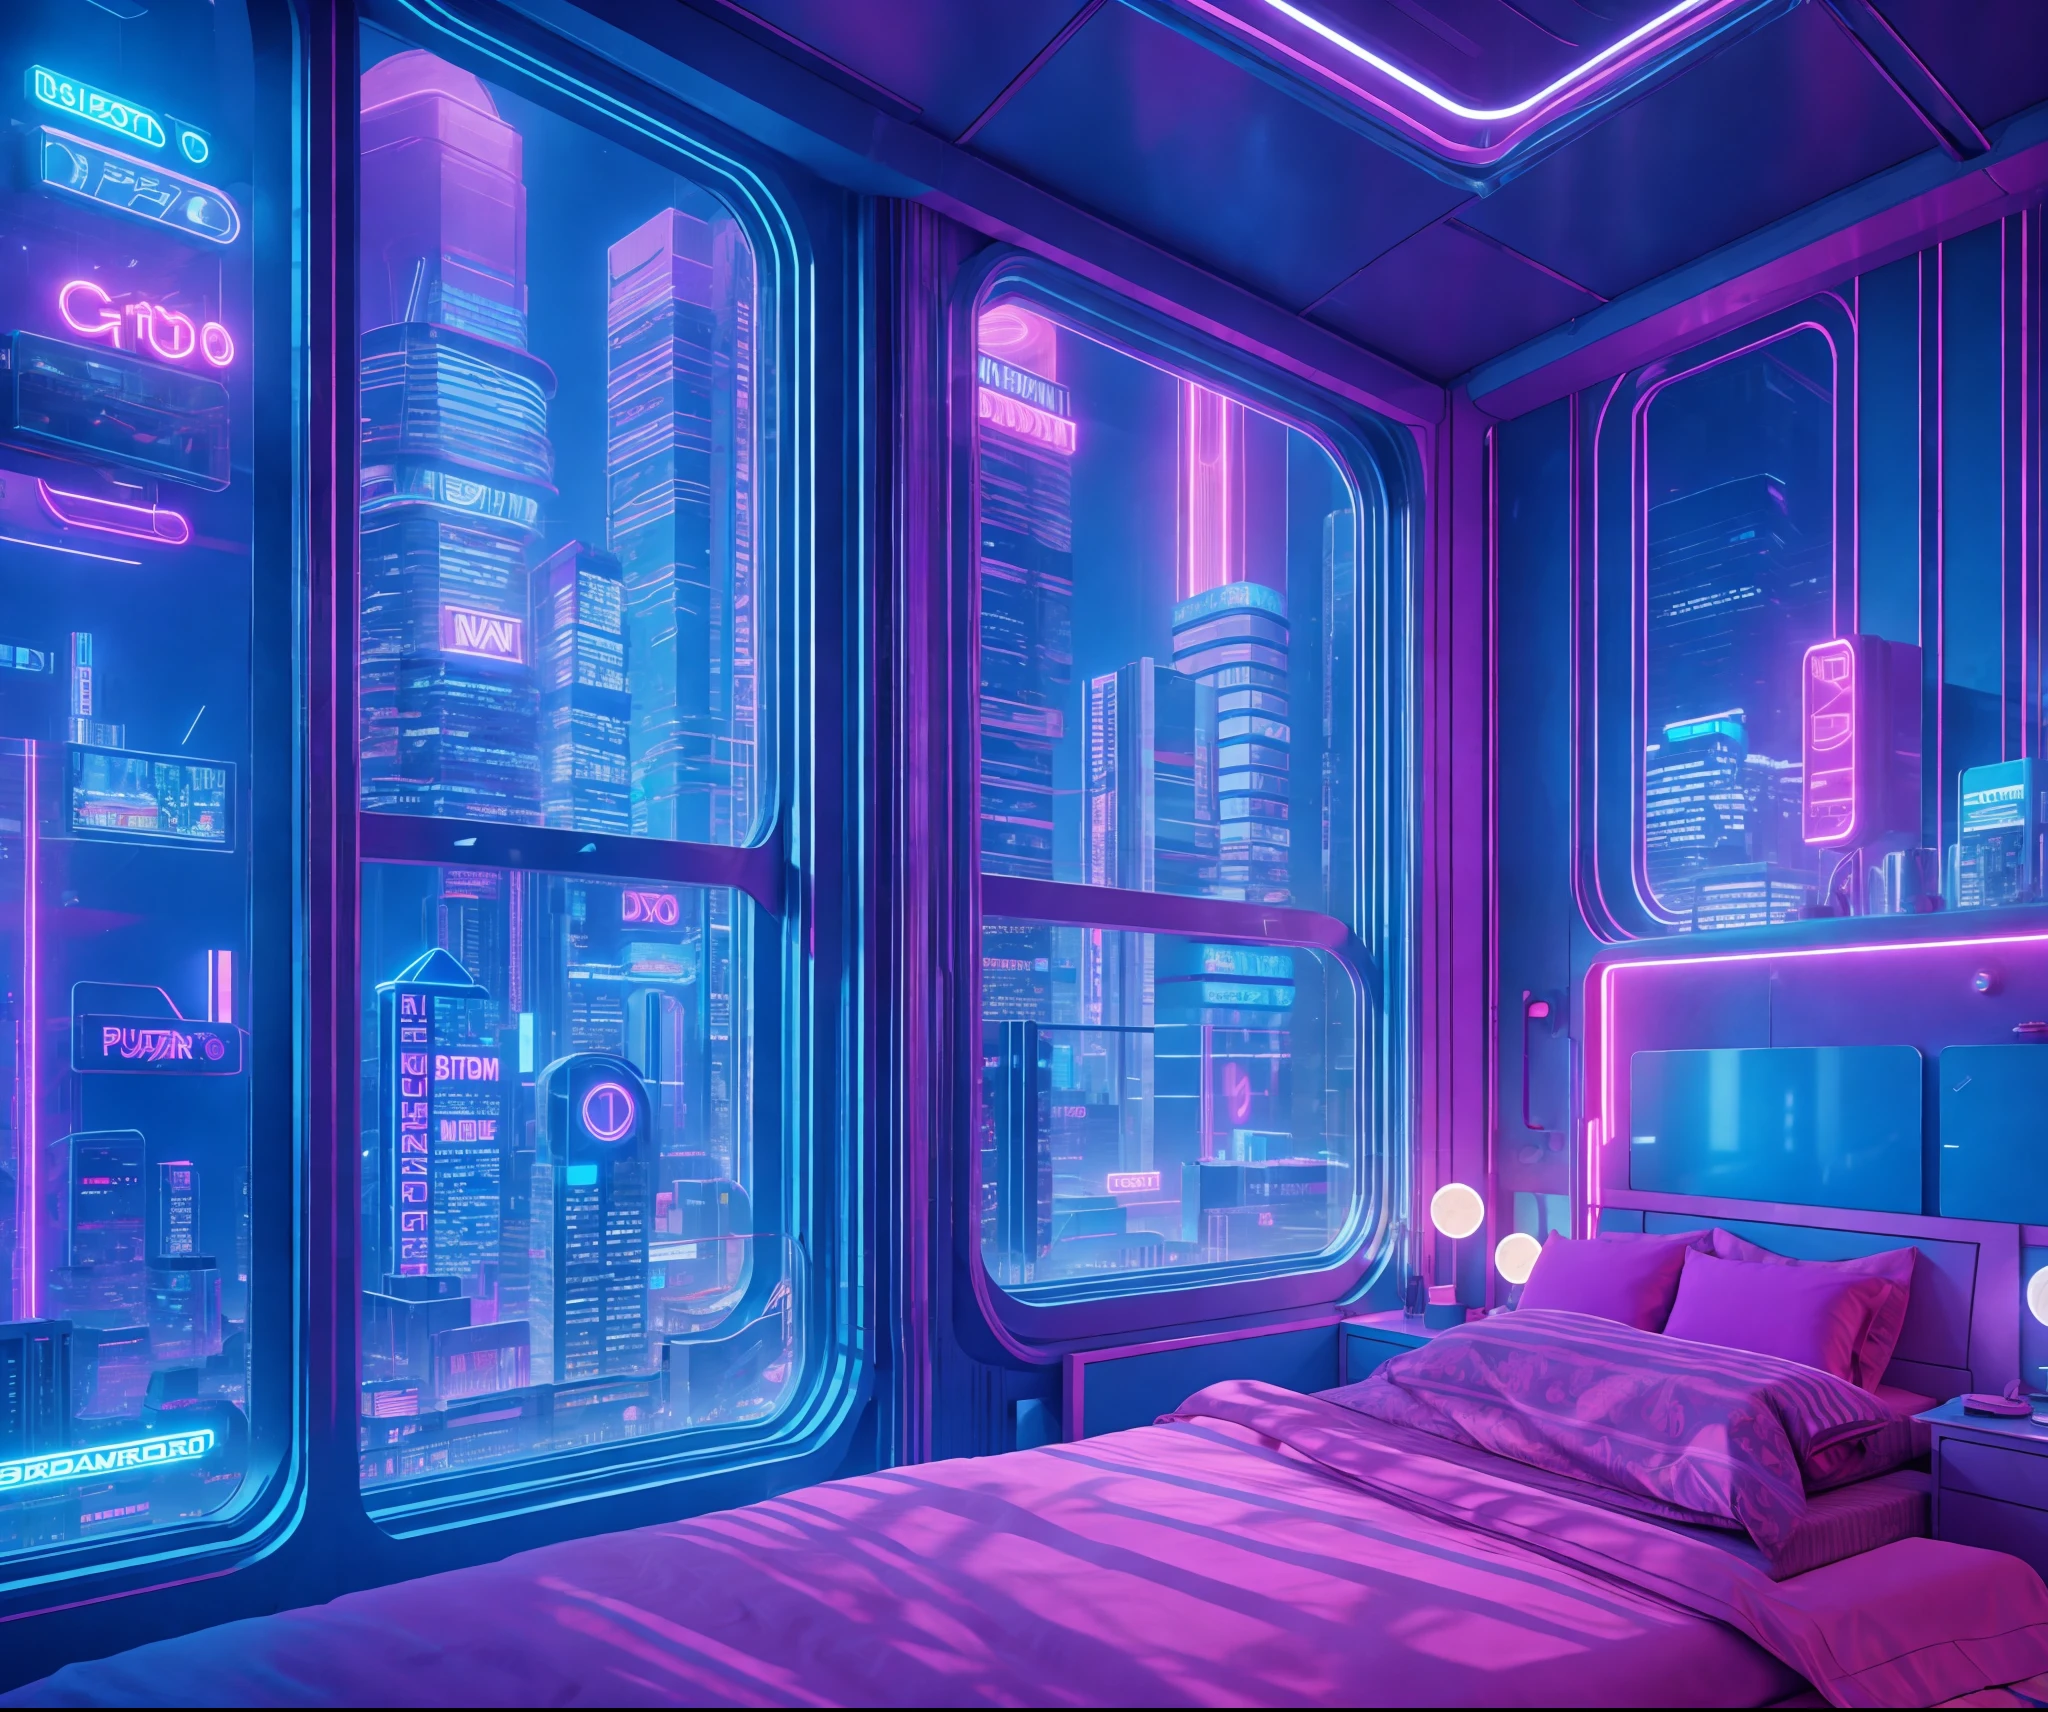 ((chef-d&#39;œuvre)), (Ultra-détaillé), (Détails complexes), (Illustration CGI haute résolution 8k), Créez une image d’une petite chambre cyberpunk vaporwave rétro-futuriste et réaliste la nuit. L&#39;un des murs devrait comporter une grande fenêtre avec un, coloré, et détaillé (cyberpunk), synthwave, paysage urbain au néon. La ville devrait avoir un style futuriste avec beaucoup de couleurs, néons, panneaux, et des bâtiments de tailles différentes. Le paysage urbain doit être extrêmement détaillé avec une profondeur de champ. La ville doit avoir beaucoup d&#39;intérêt visuel avec de nombreux petits détails. Utilisez un éclairage d&#39;ambiance et d&#39;ambiance pour créer de la profondeur et évoquer la sensation d&#39;une ville futuriste animée devant la fenêtre.. Portez une attention particulière aux détails comme les détails complexes, embauche des yeux et des accents de chambre des années 90. Caméra: Plan d’ensemble montrant une partie de la pièce et la fenêtre. La fenêtre doit être le point central de l&#39;image. Le paysage urbain doit remplir la fenêtre. éclairage: utiliser un éclairage d&#39;ambiance et volumétrique pour mettre en valeur les détails du paysage urbain. The room should be illuminated by the néons from the cityscape.